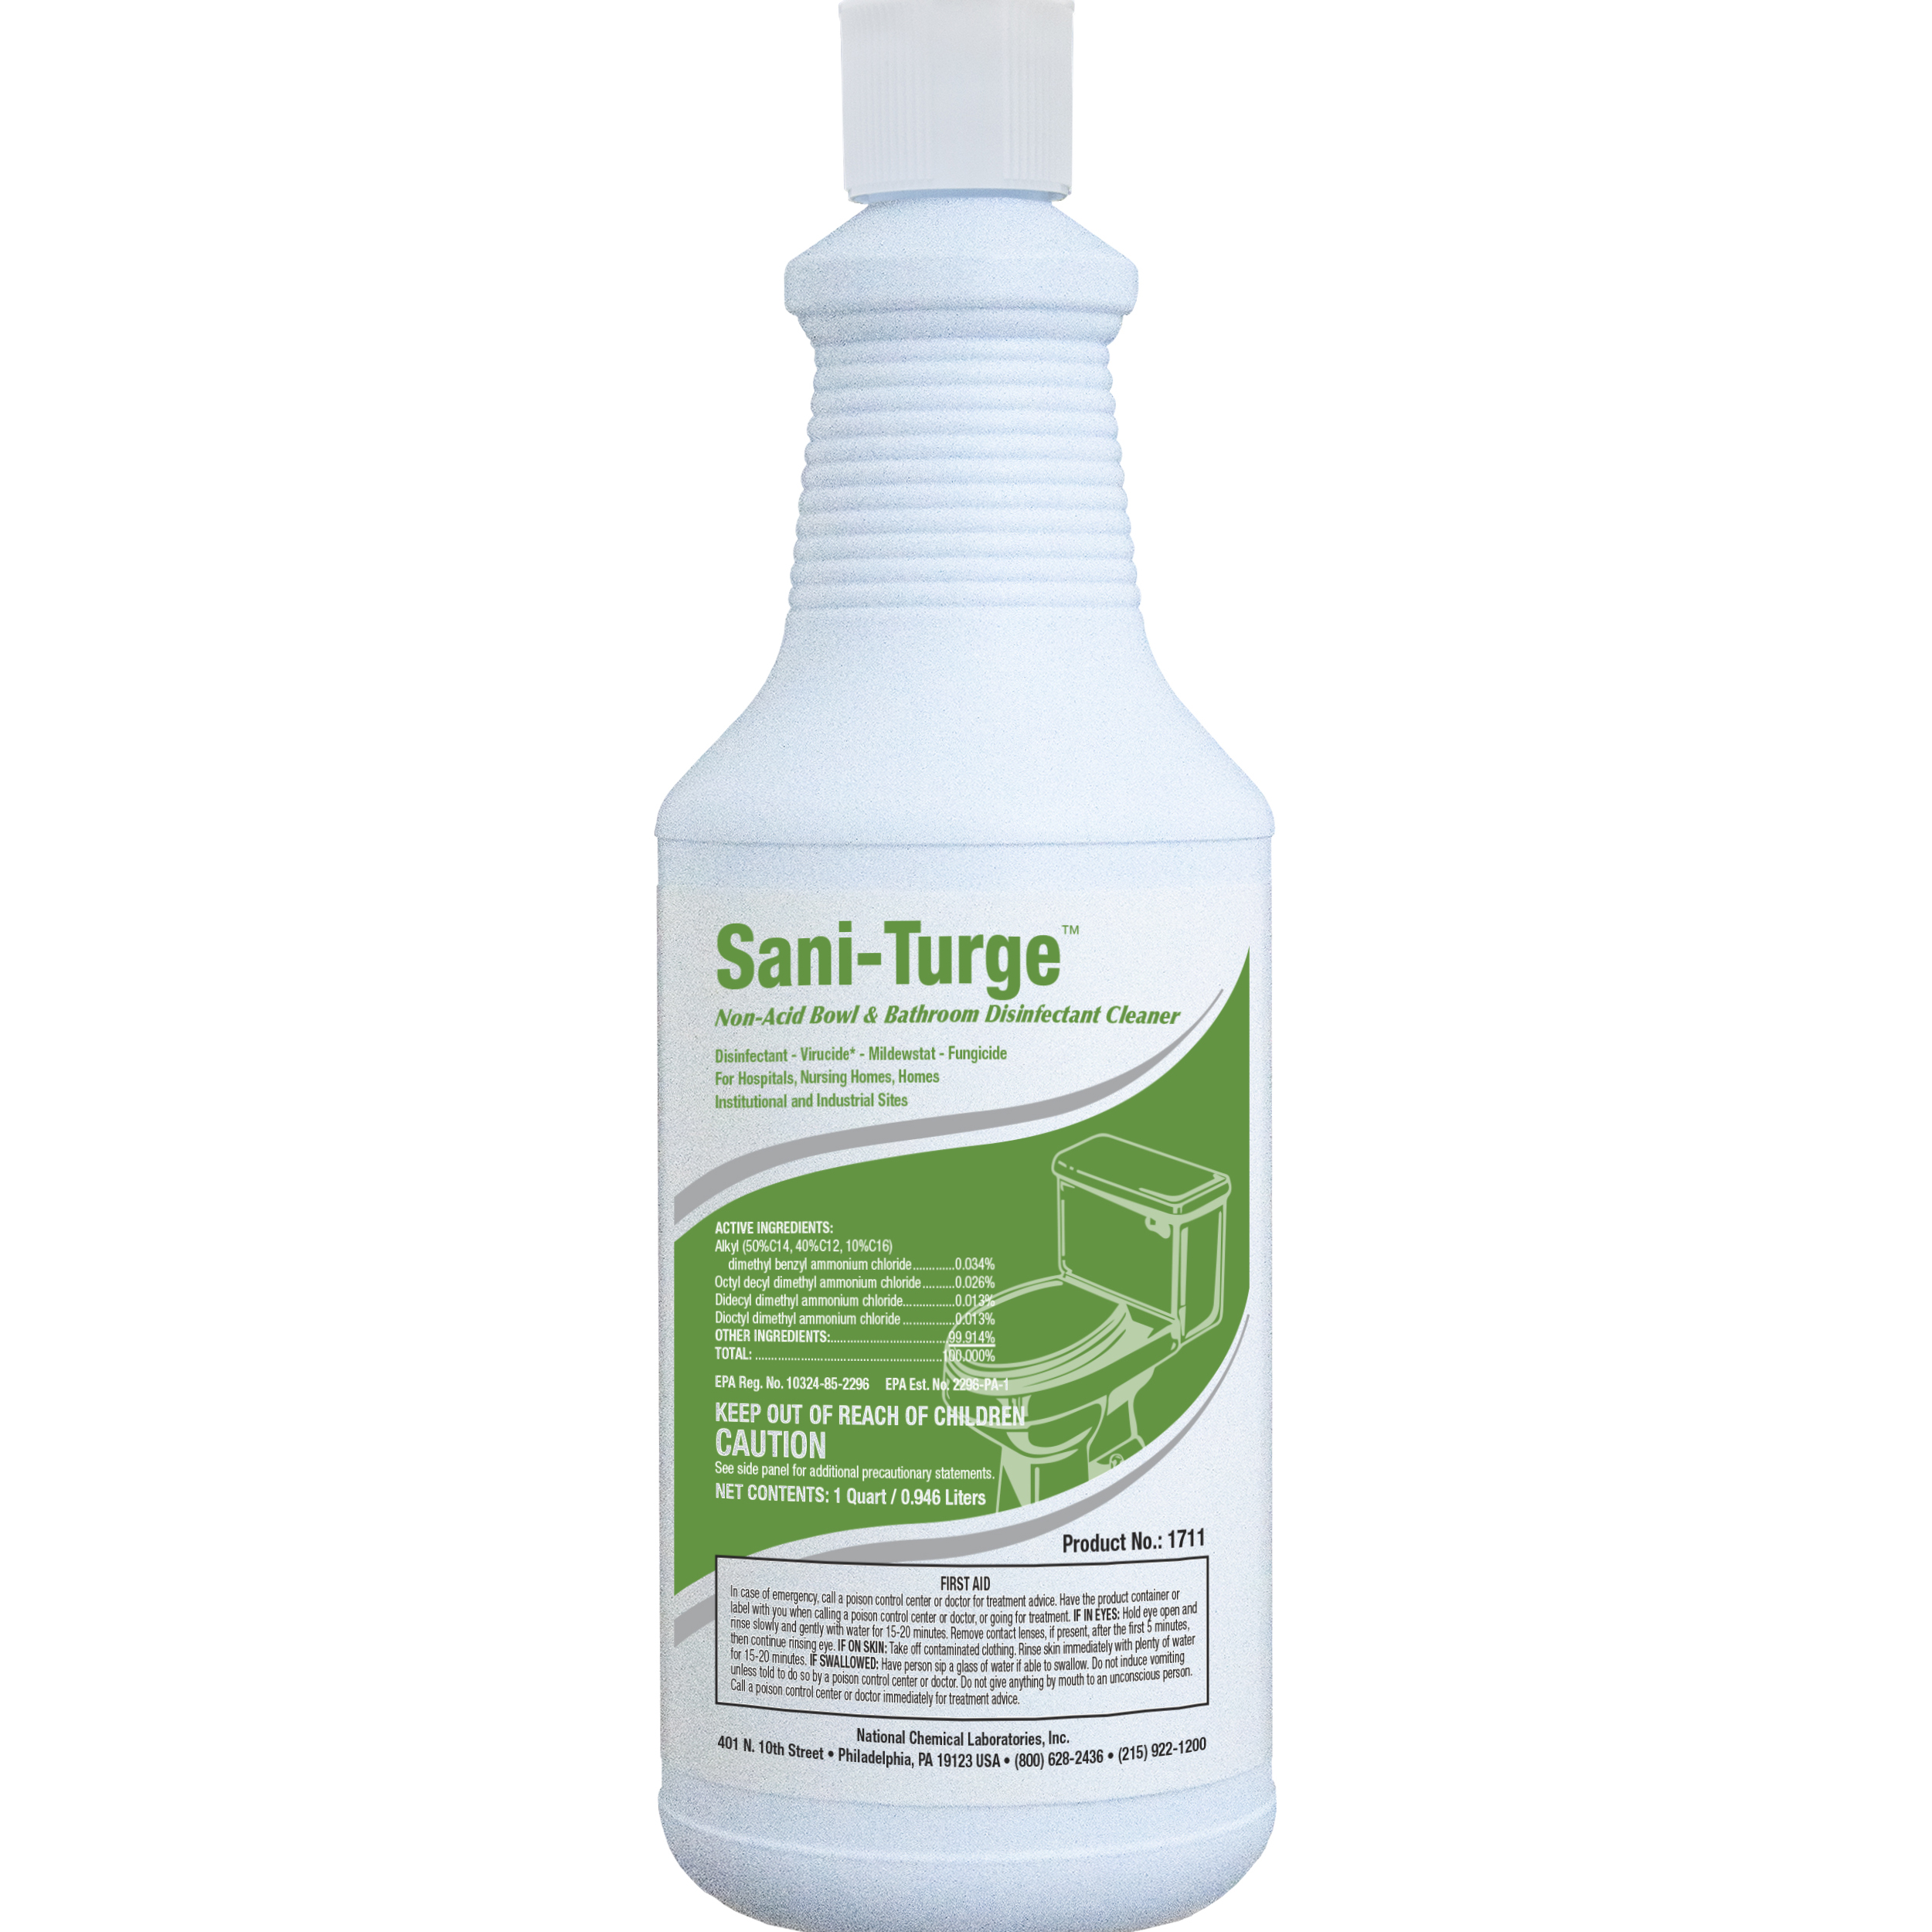  SANI-TURGE Non-Acid Bowl & Bathroom Disinfectant Cleaner 12/32 oz (1 Qt.) Case (NCL1711-45) 